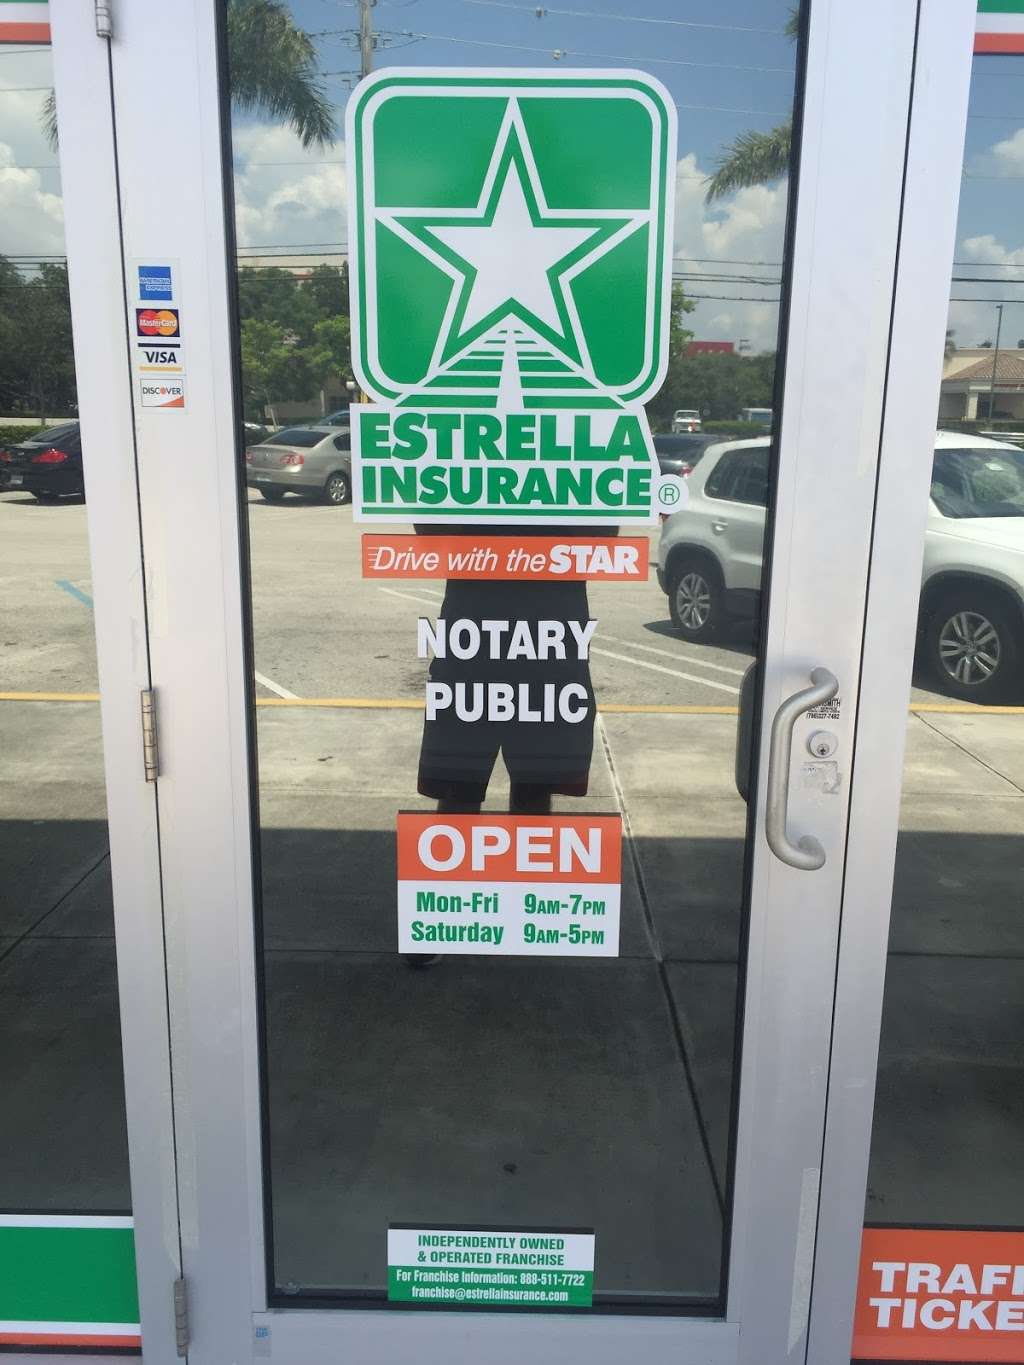 Estrella Insurance #169 | 18355 NW 57th Ave #103b, Miami Gardens, FL 33055 | Phone: (305) 830-1477